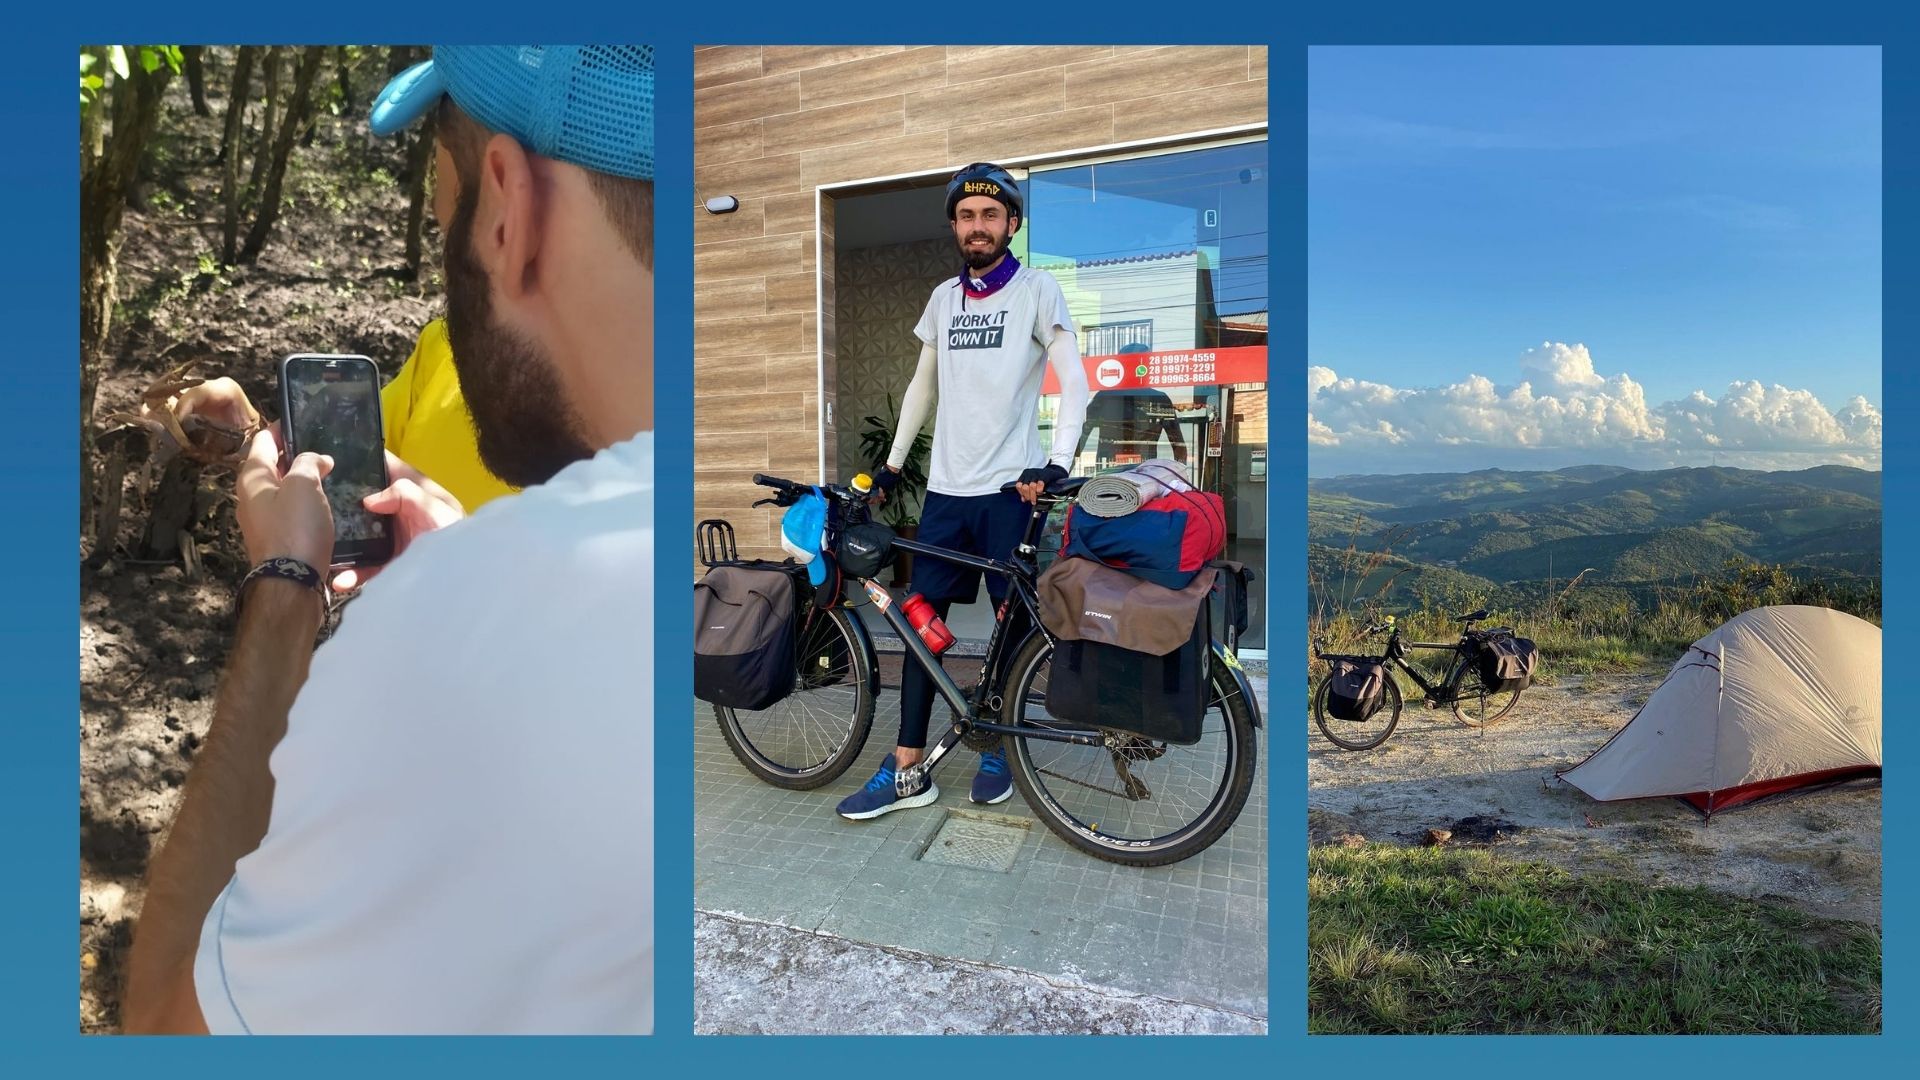 Há três anos, Pavel Sapunov viaja pelo mundo e, no Brasil, está conhecendo cidades de bicicleta. Em conversa com a reportagem de A Gazeta, ele comentou sobre a guerra: 'Não consigo ver motivo de atravessar um lugar e matar pessoas'